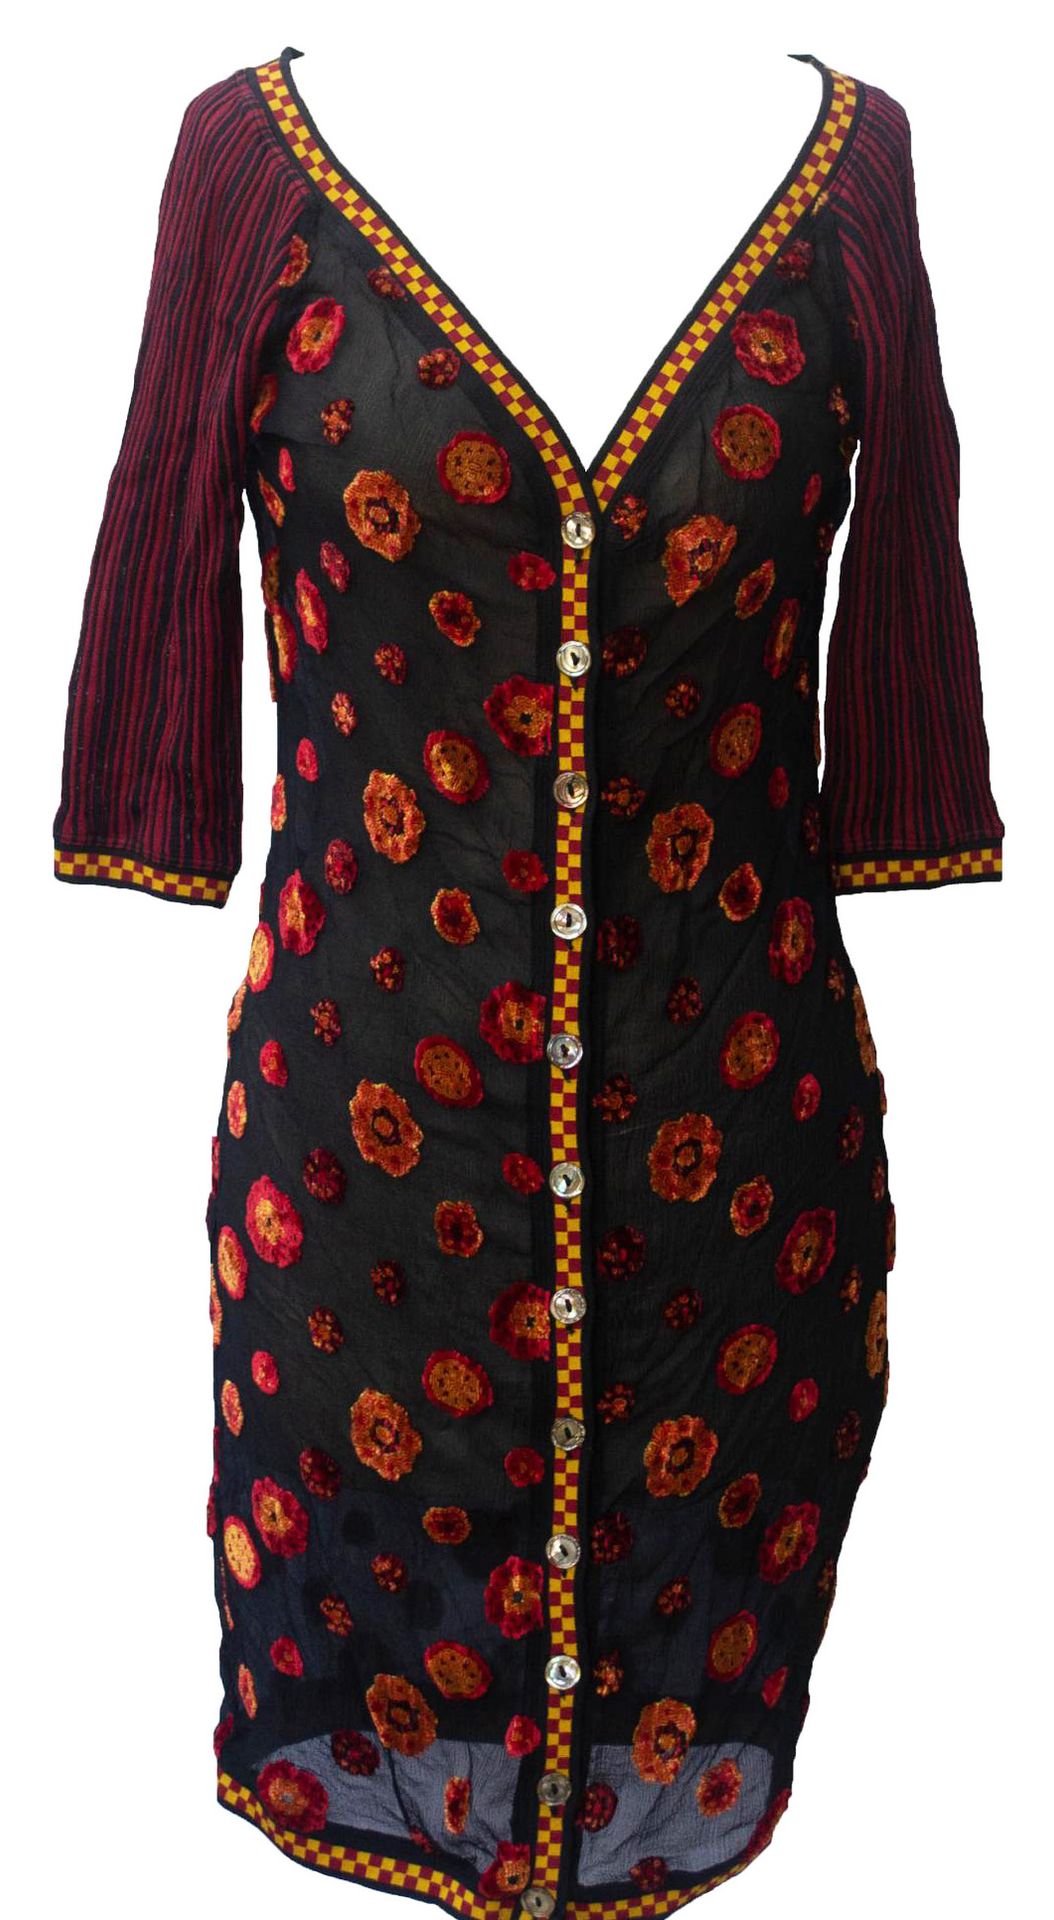 Null Jean Paul Gaultier

MAILLE连衣裙



描述。

黑色雪纺绉绸提花连衣裙，有淡红色雪尼尔花纹。袖子和边缘为条纹针织品。前面作&hellip;